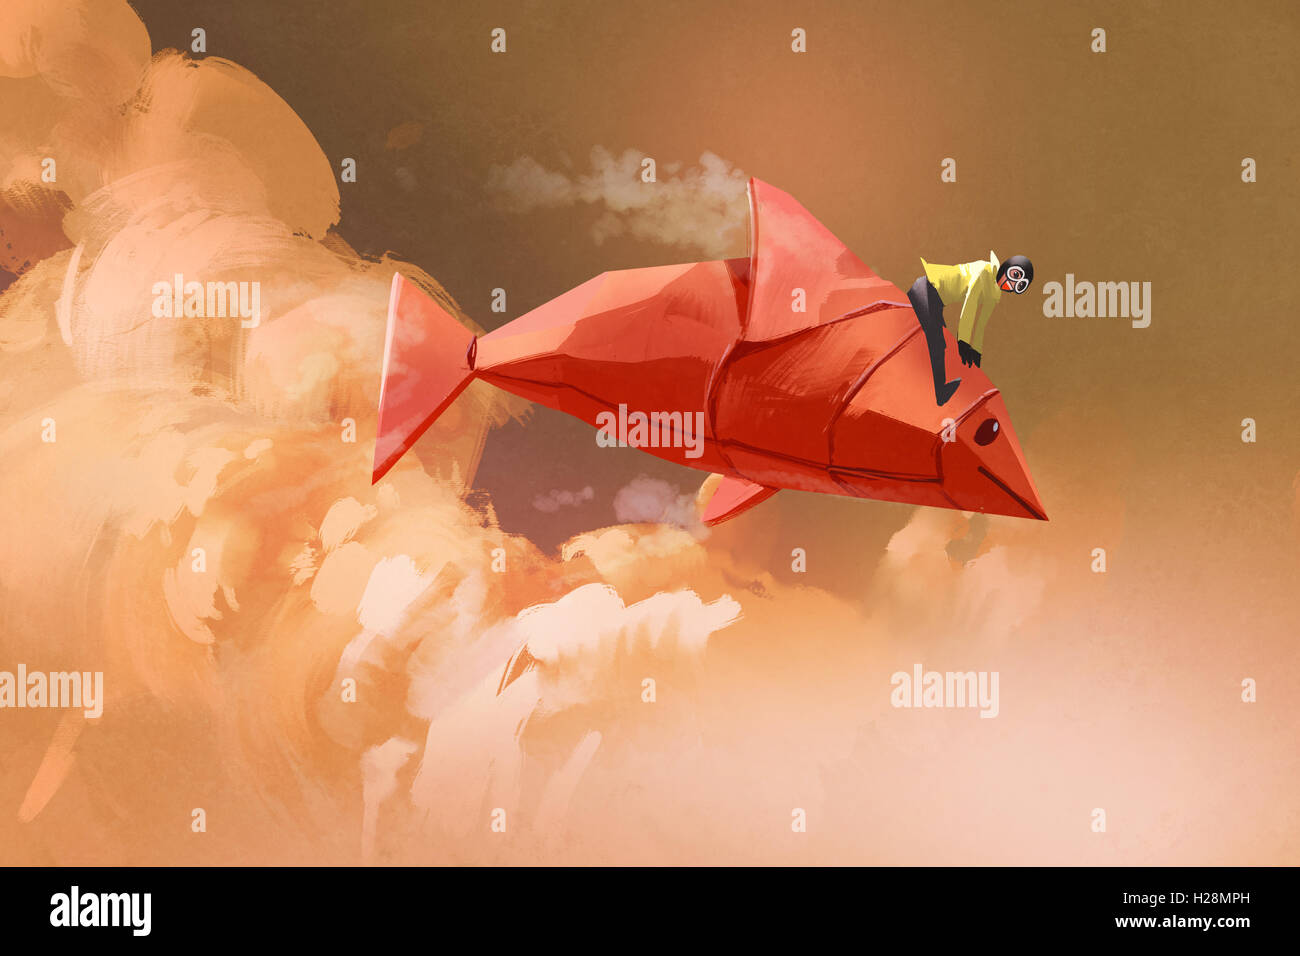 Girl riding sur le papier origami poisson rouge dans les nuages,illustration peinture Banque D'Images